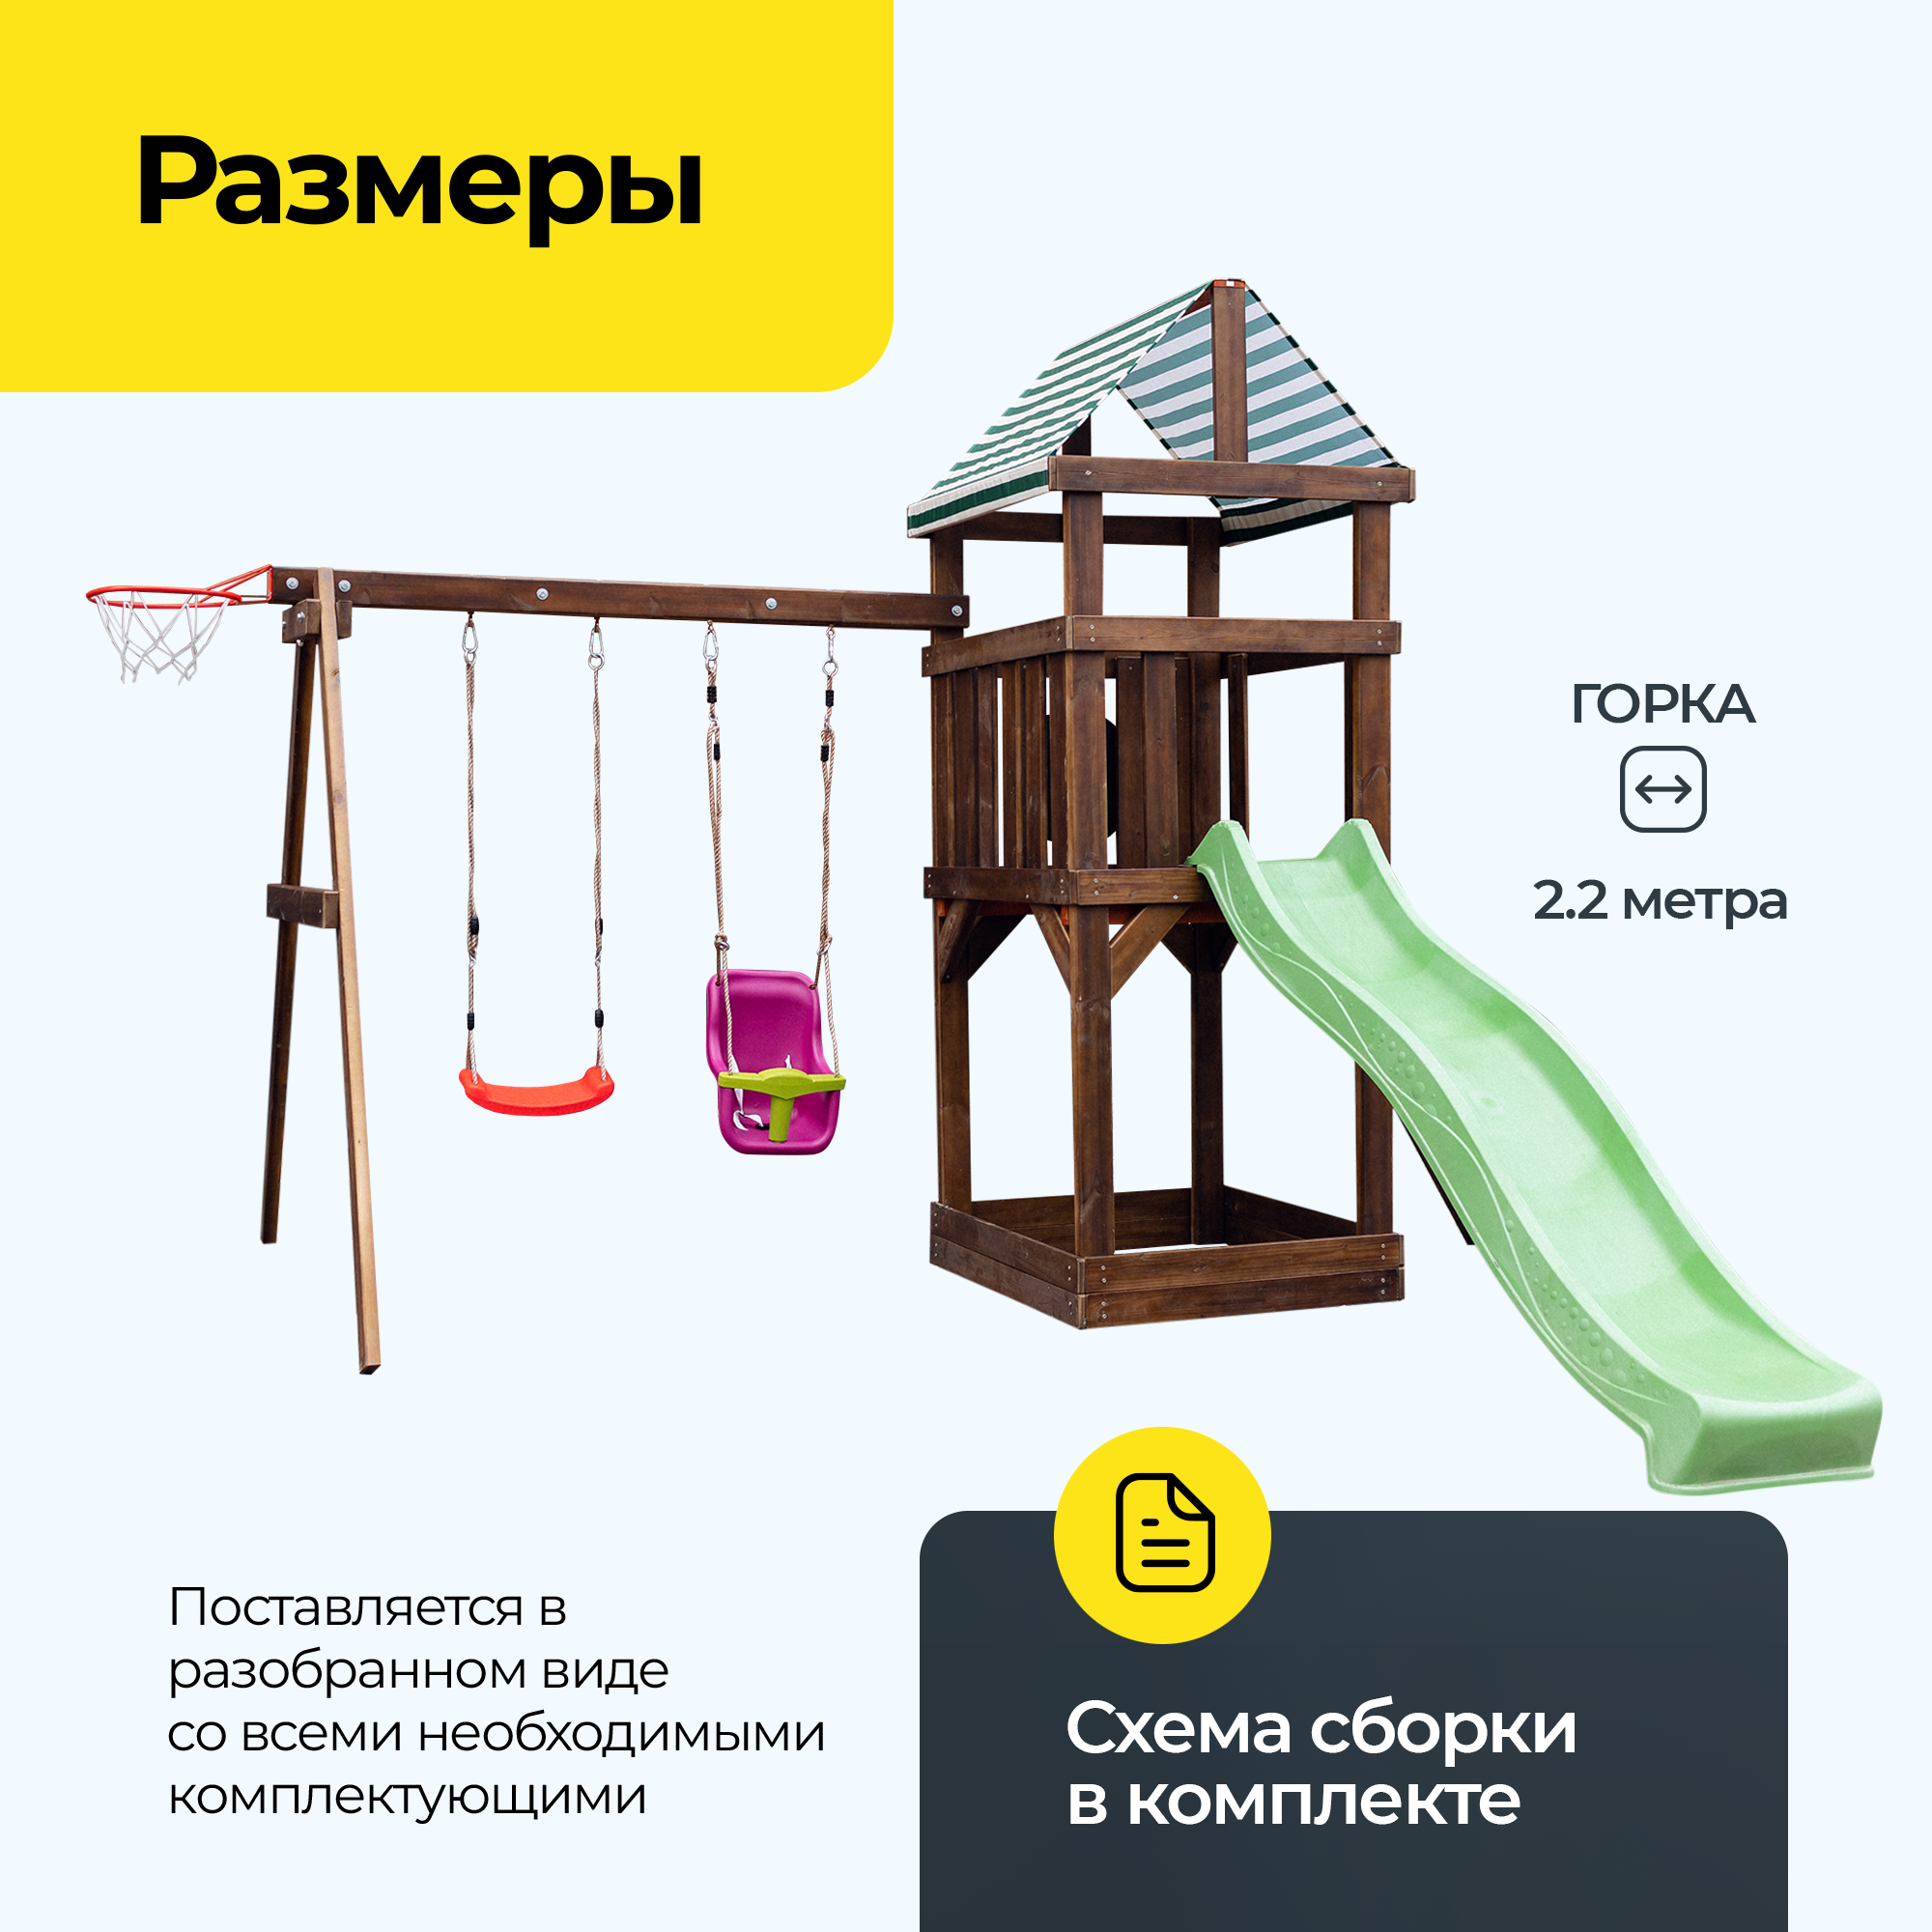 Детская площадка для улицы деревянная Pletenev с горкой, качелями, с баскетбольным кольцом